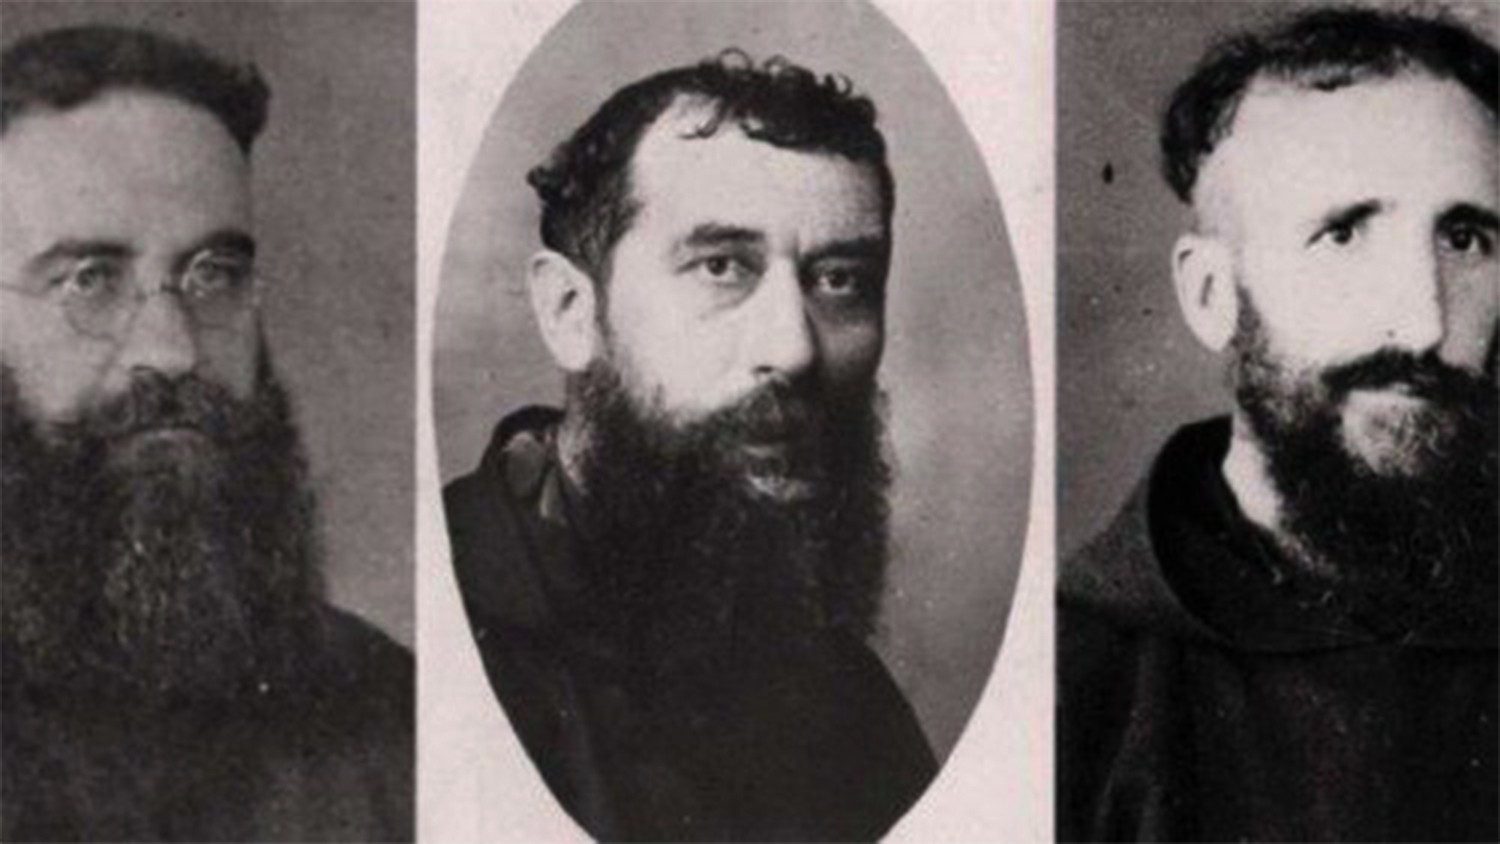 Francesco ricorda i tre martiri beatificati ieri, uccisi nella guerra civile spagnola 